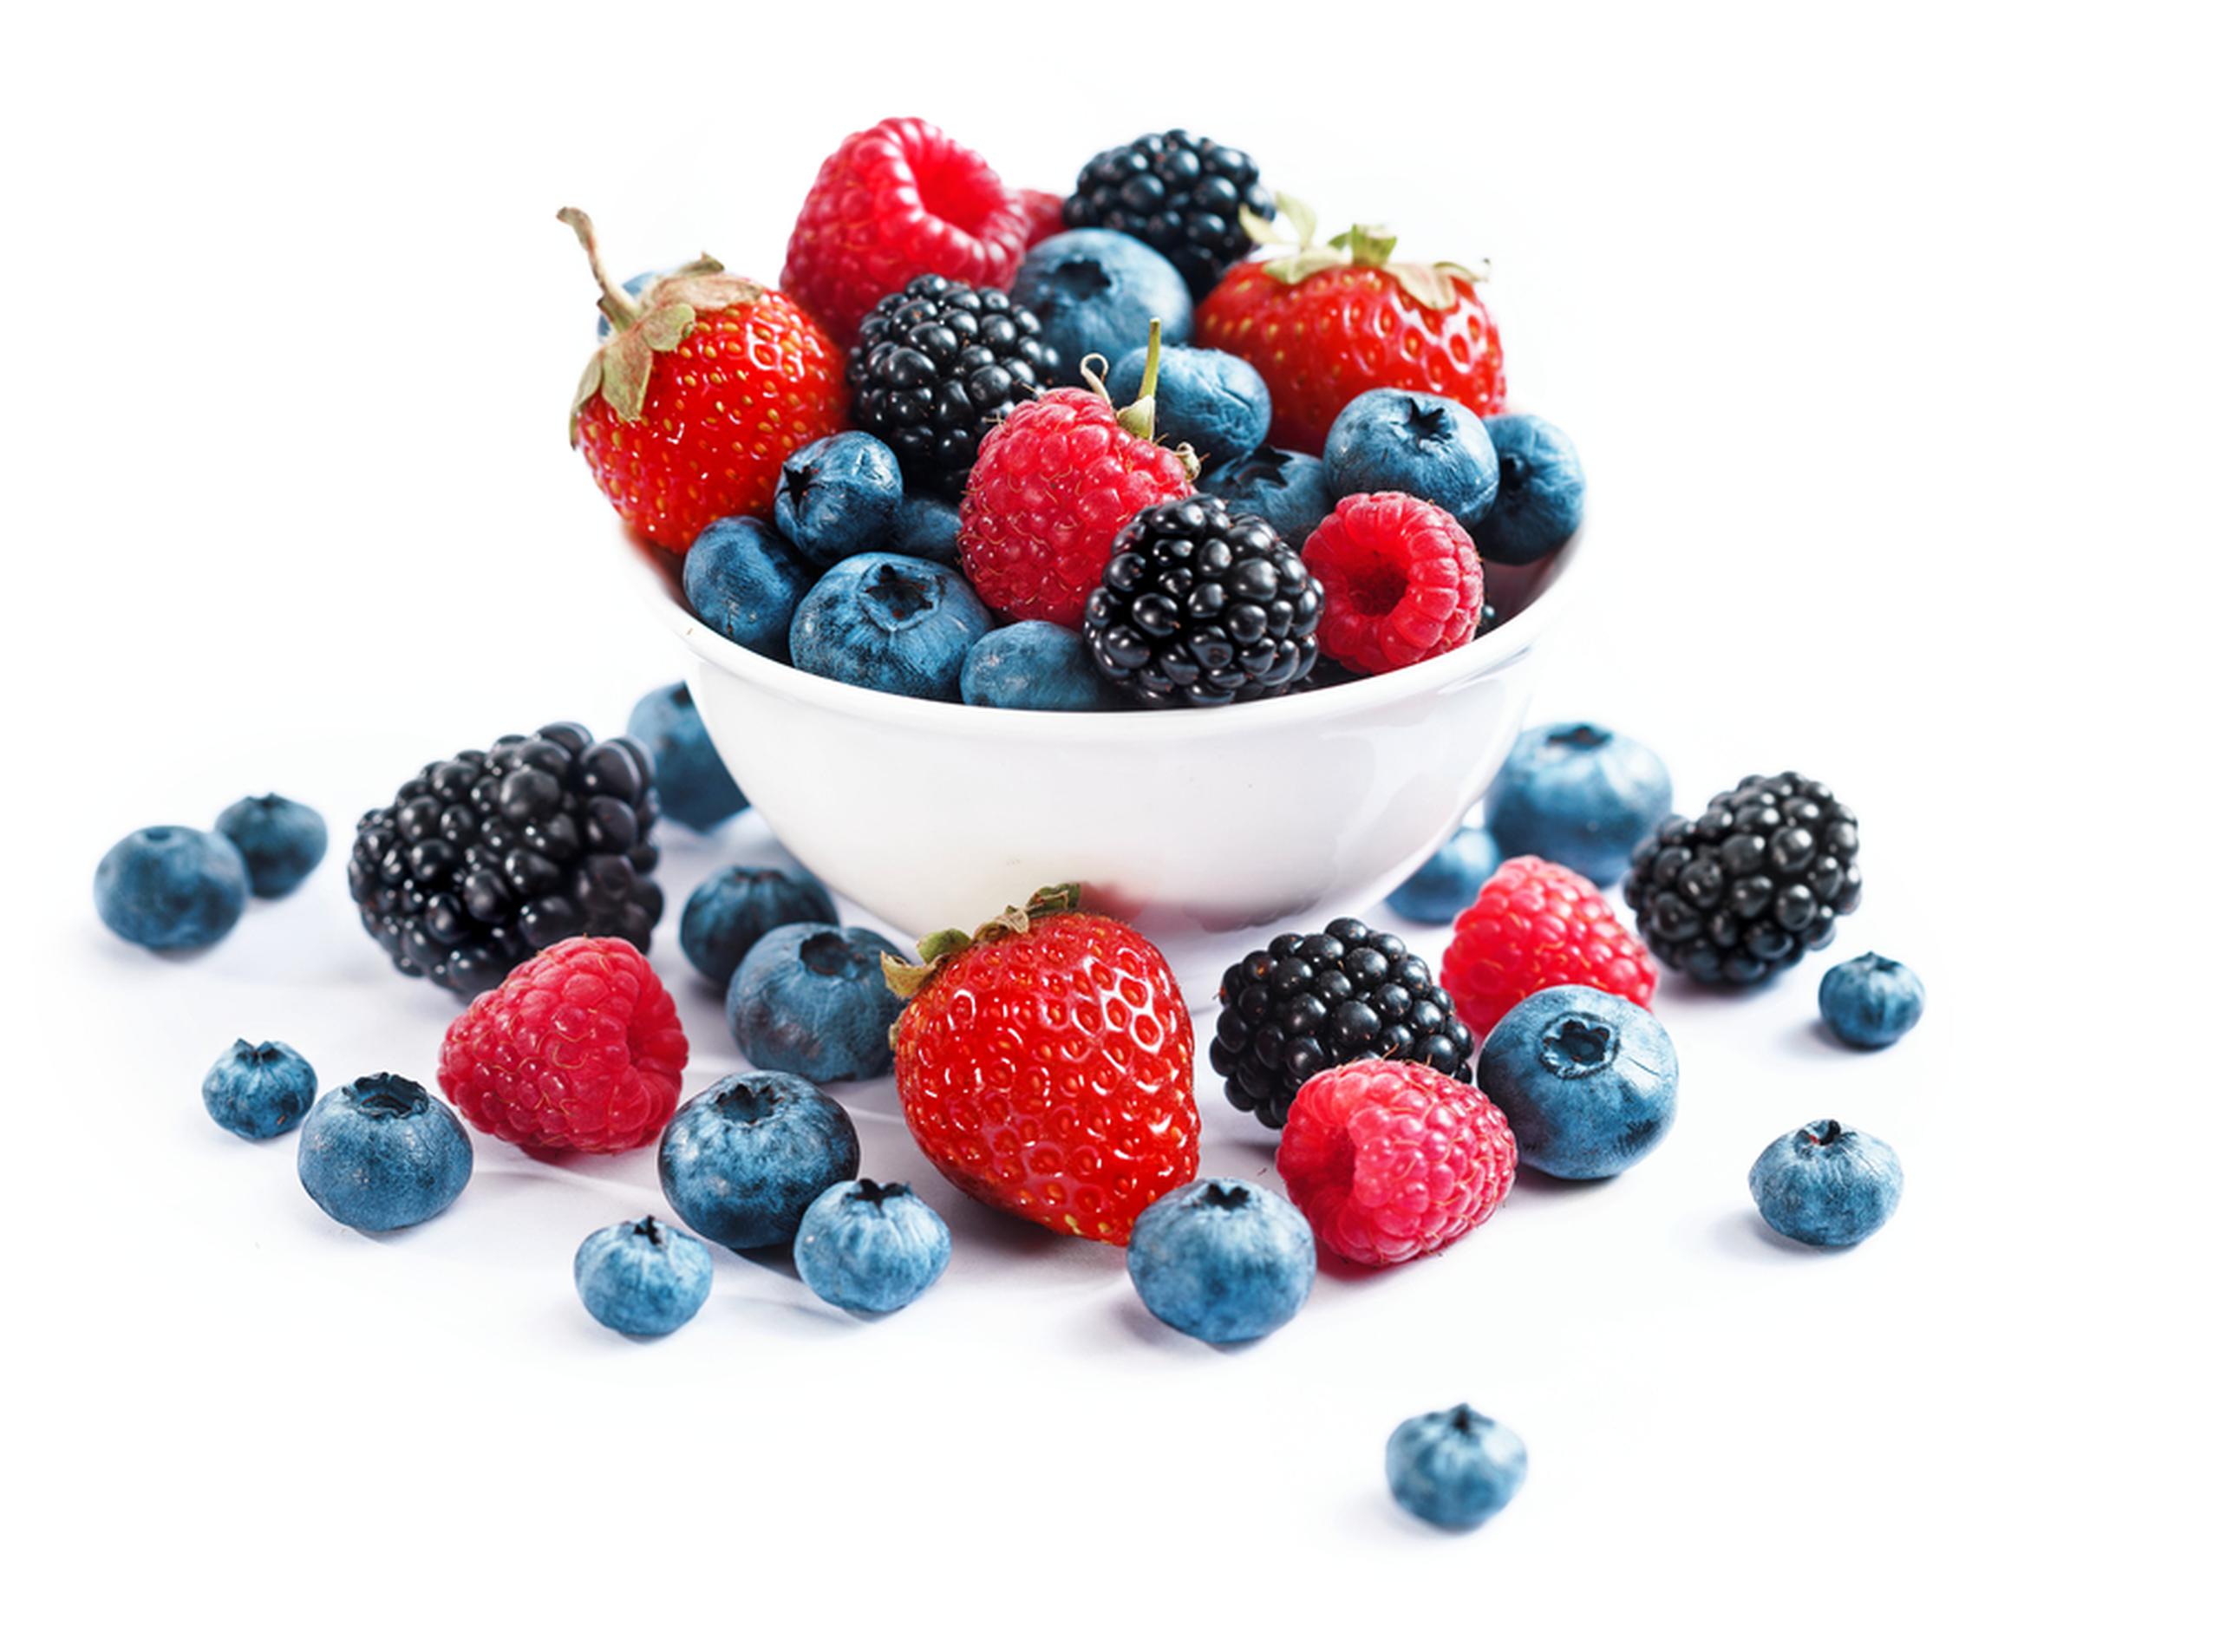 Añade de 20 a 30 gramos diarios de fibra a tu dieta, come más frutas, vegetales, granos y harinas integrales.